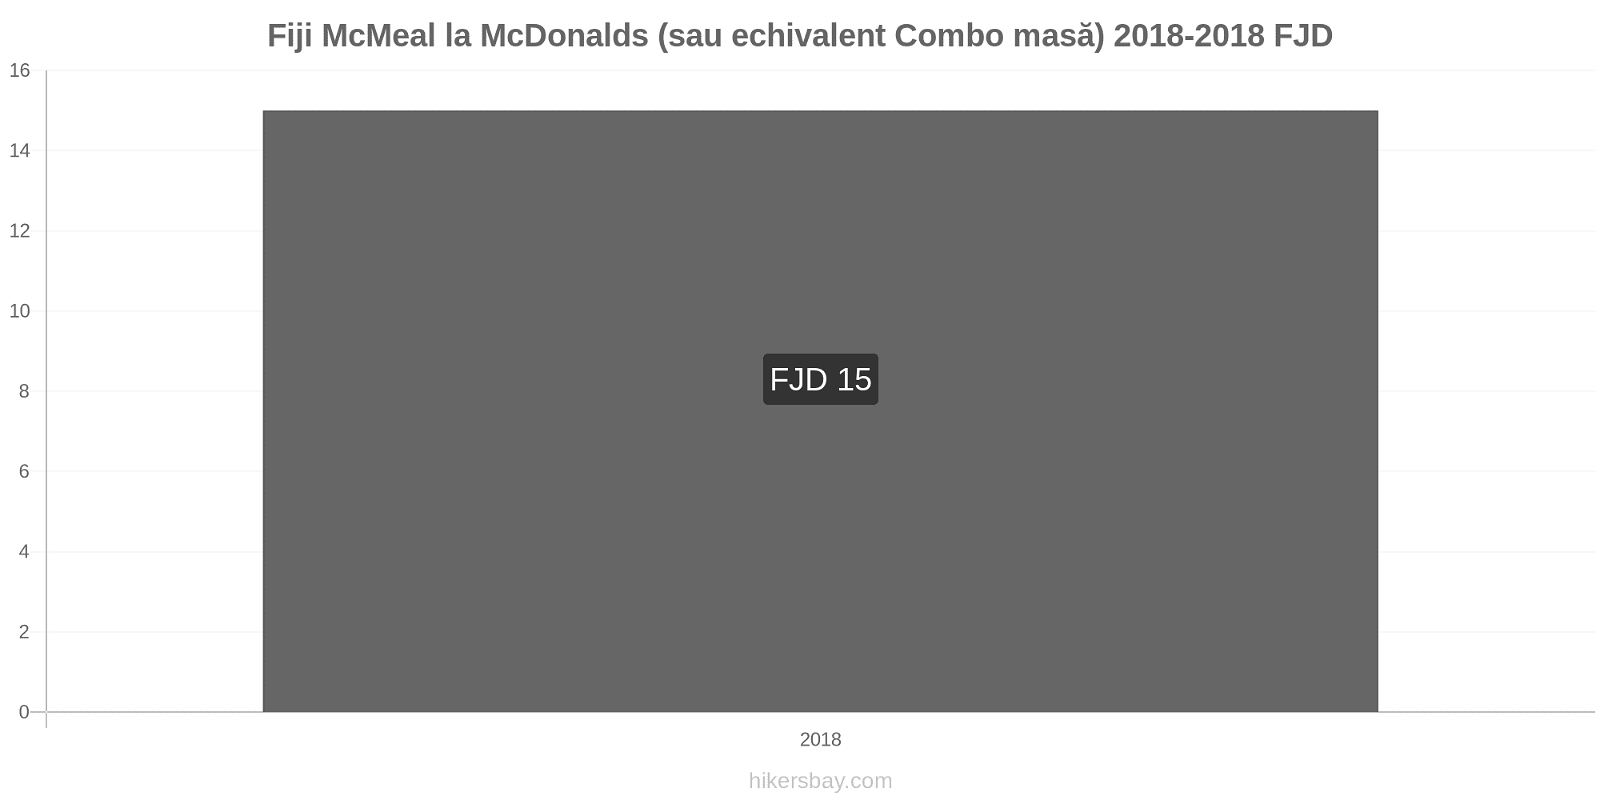 Fiji modificări de preț McMeal la McDonalds (sau echivalent Combo masă) hikersbay.com